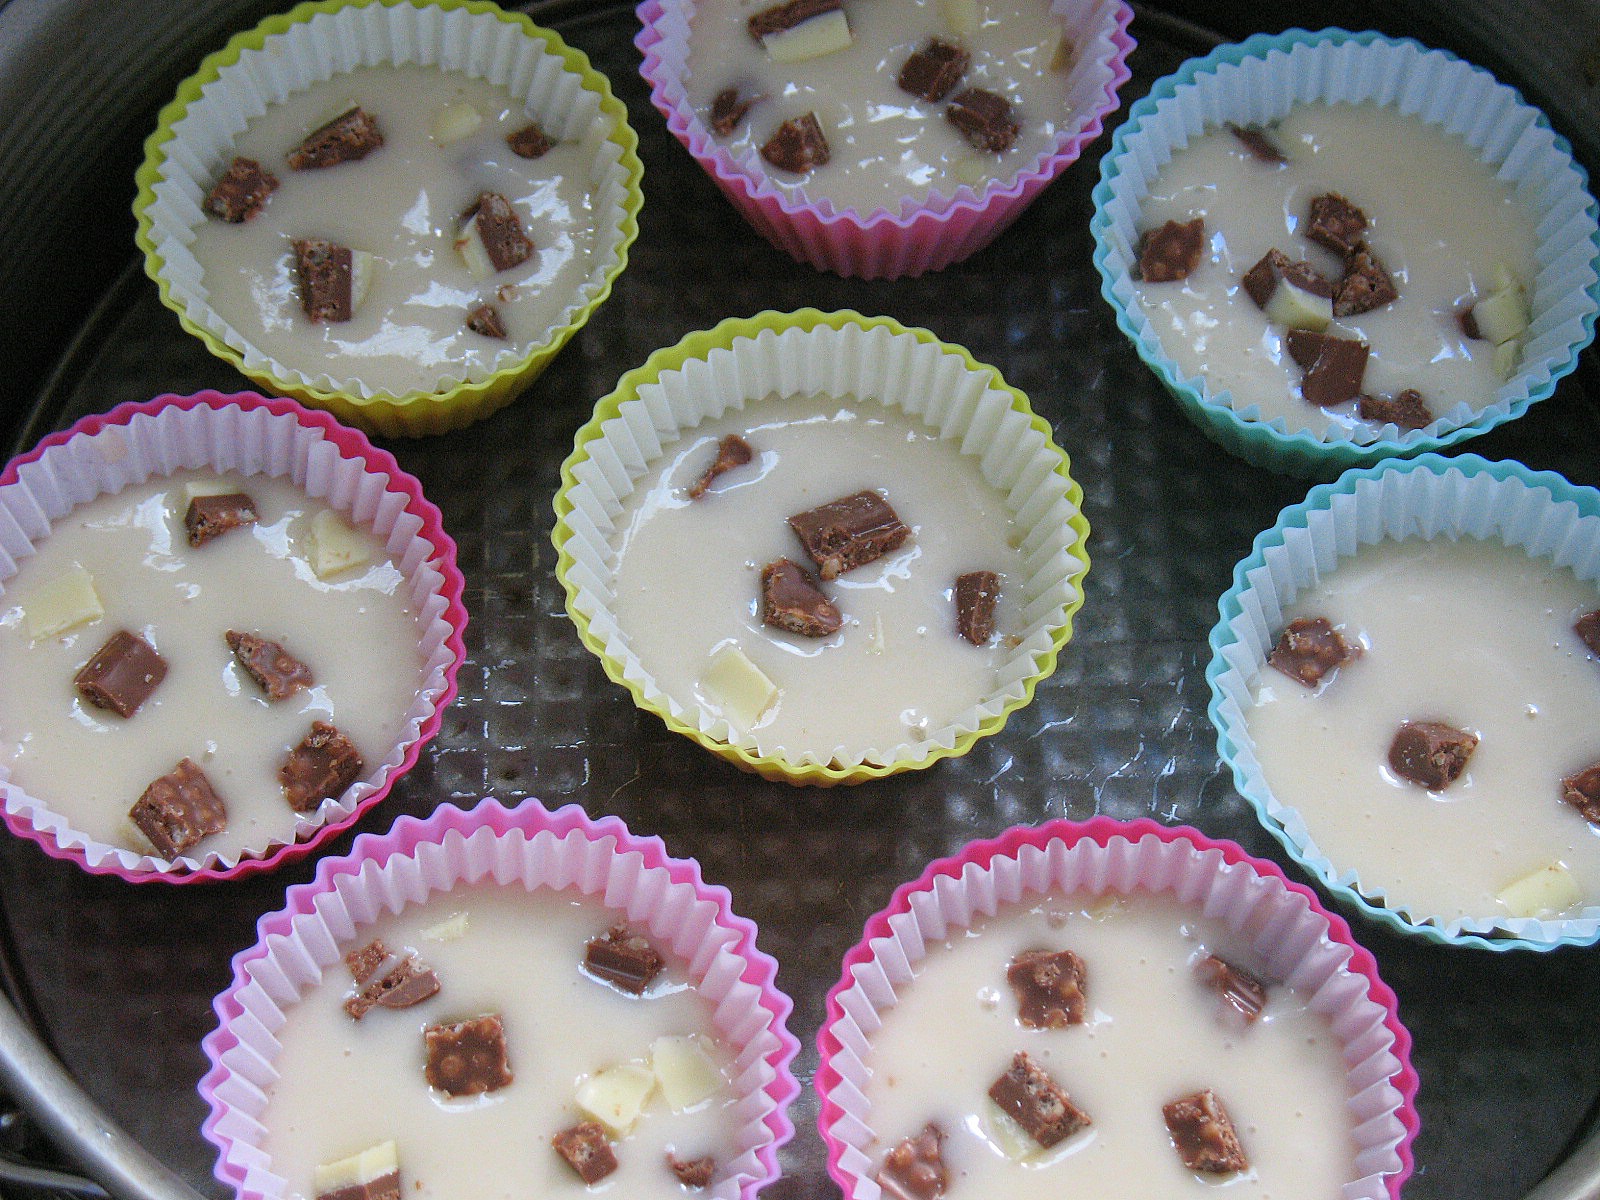 Muffins cu vanilie si bucati de ciocolata